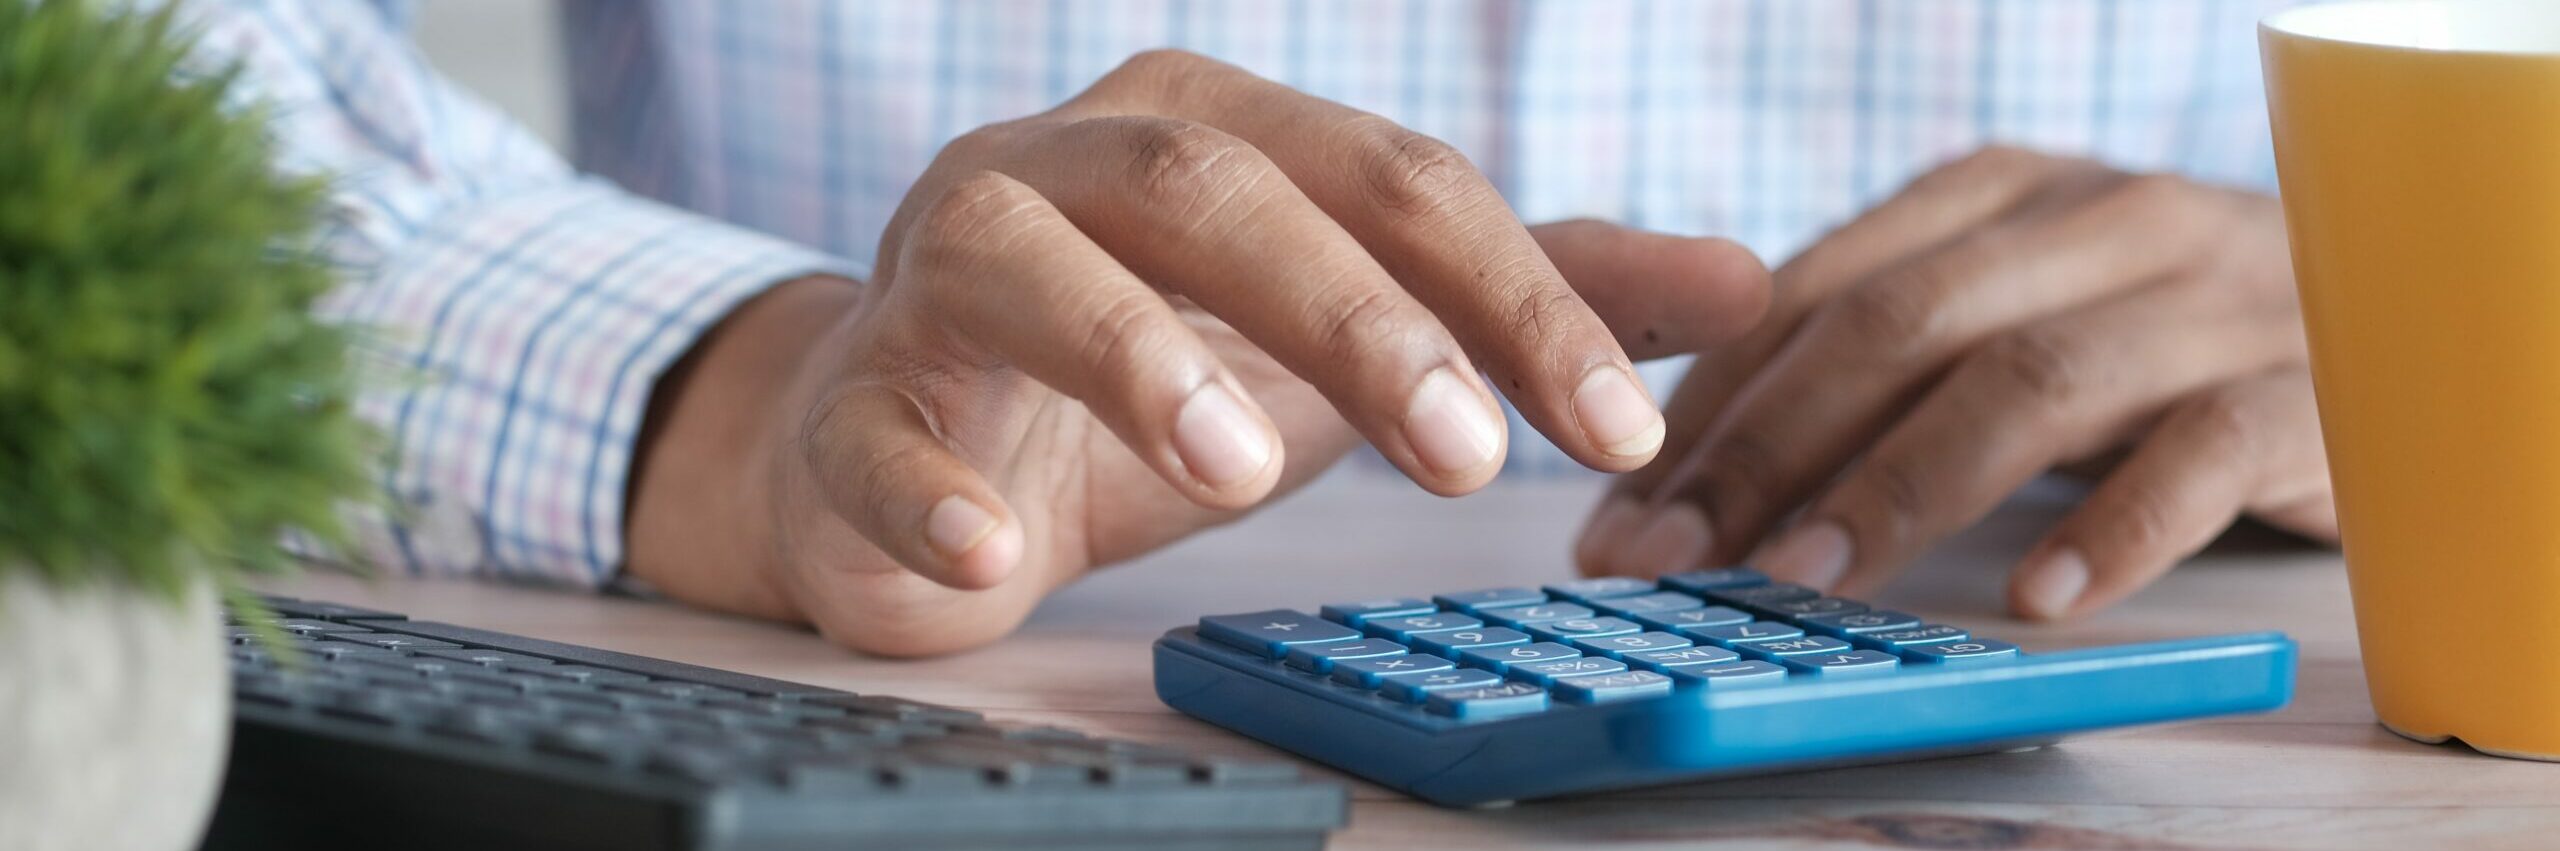 man using calculator finanace math